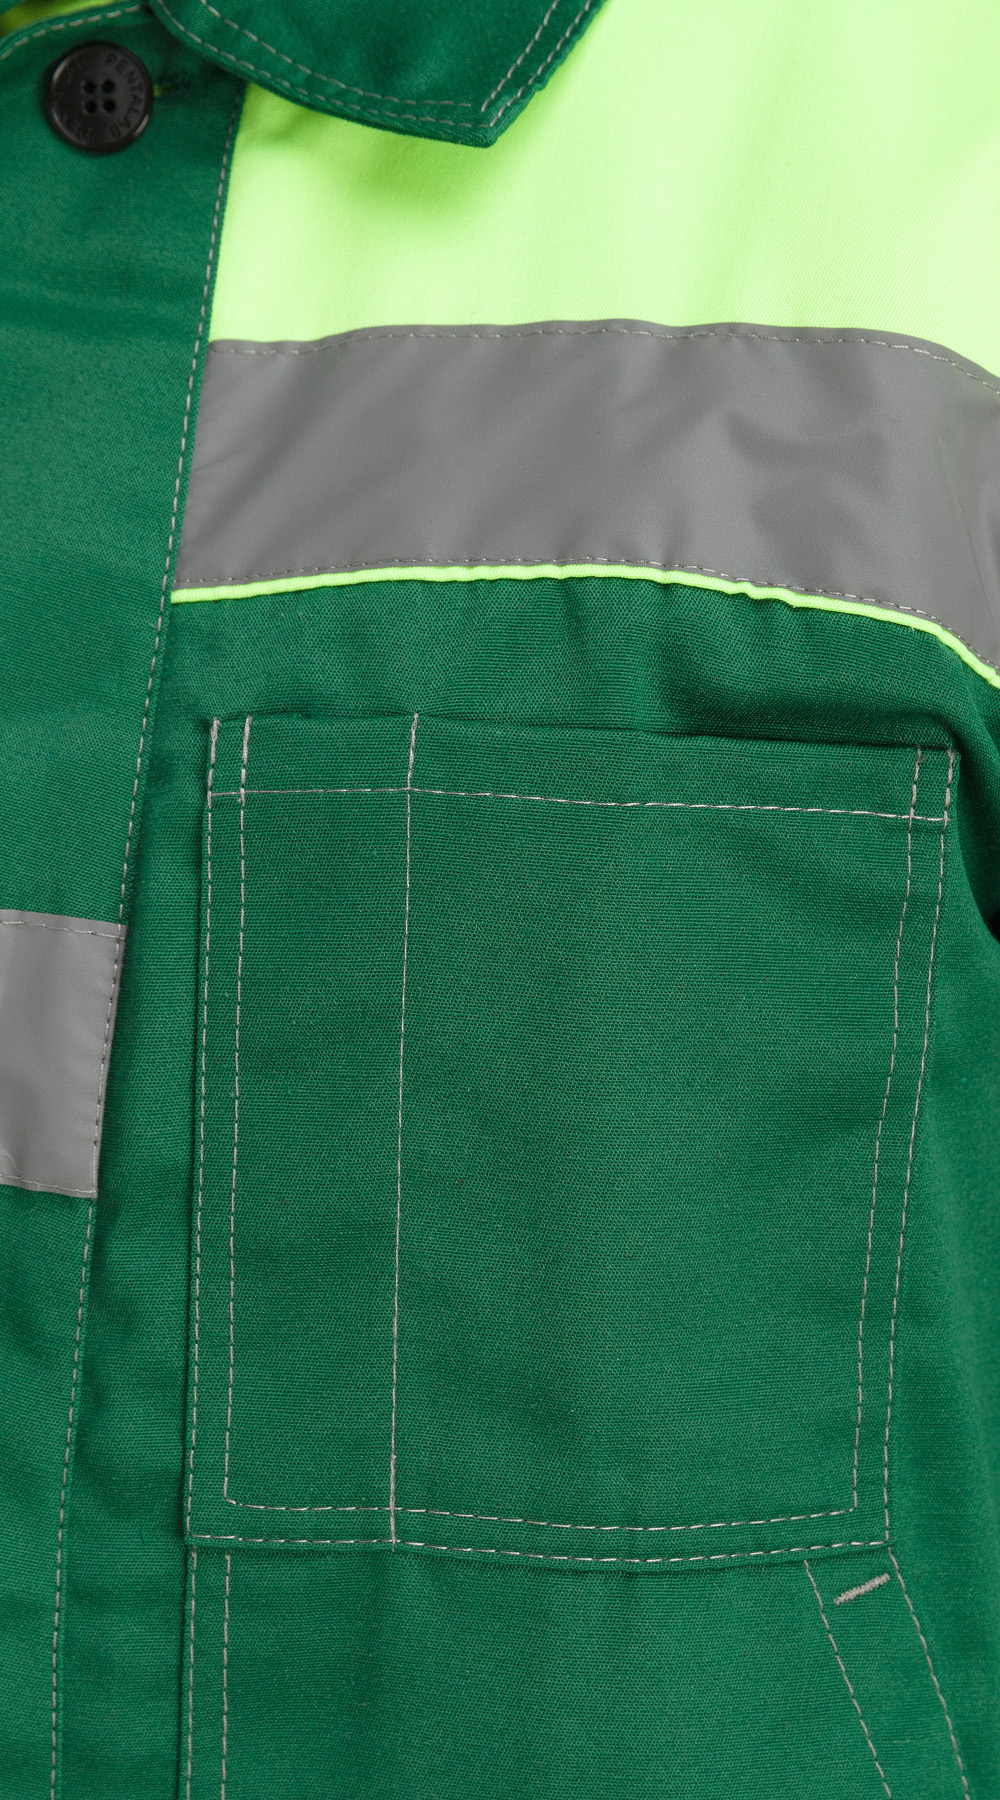 Костюм "Чикаго" с брюками (т.зеленый/лайм)